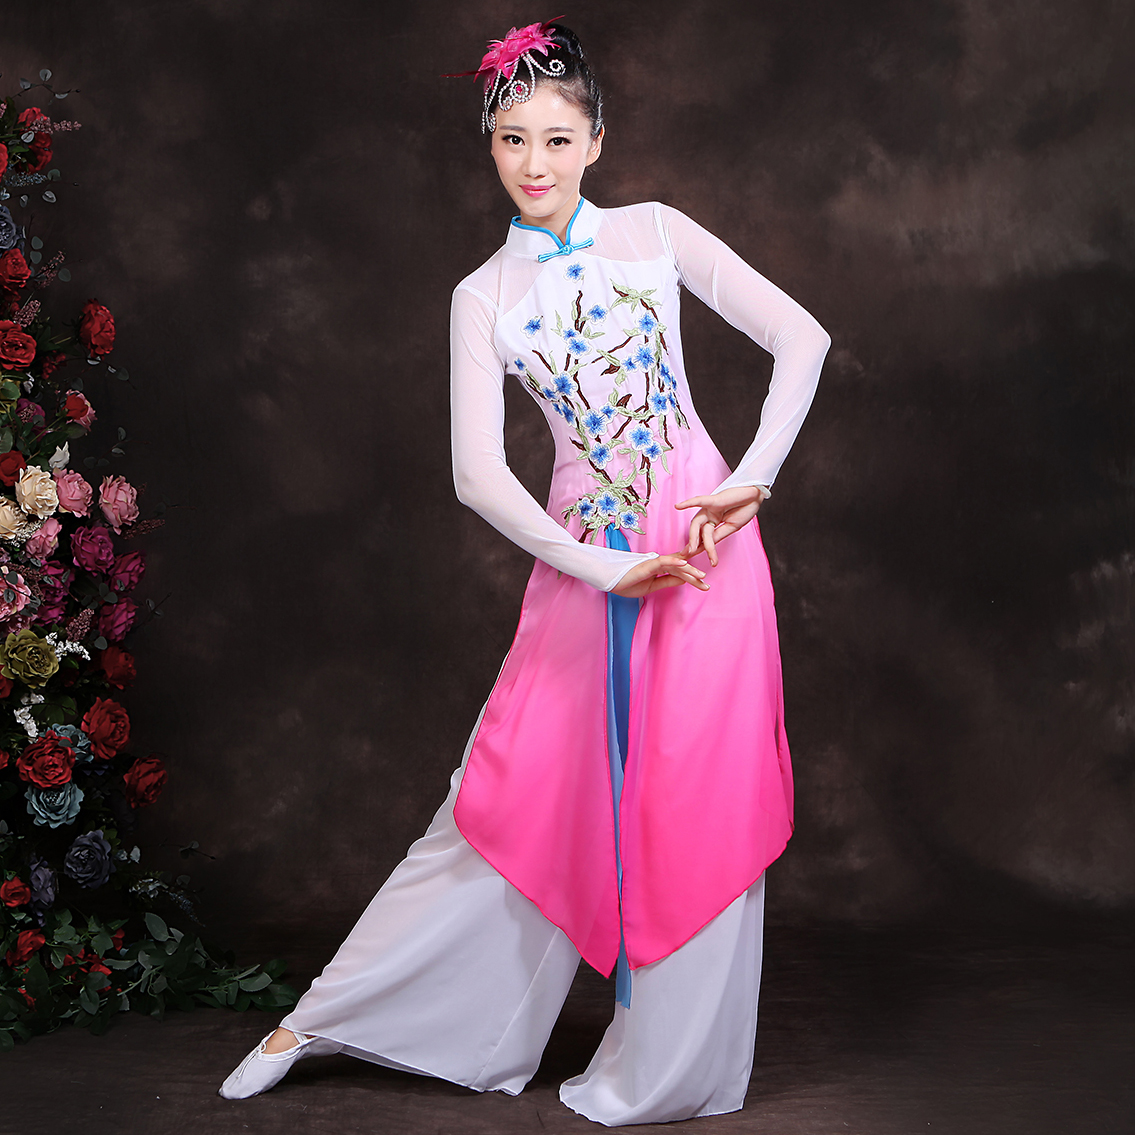 菲凡新娘古典舞伞舞舞蹈演出民族舞台服装扇子舞2016新款连衣裙女